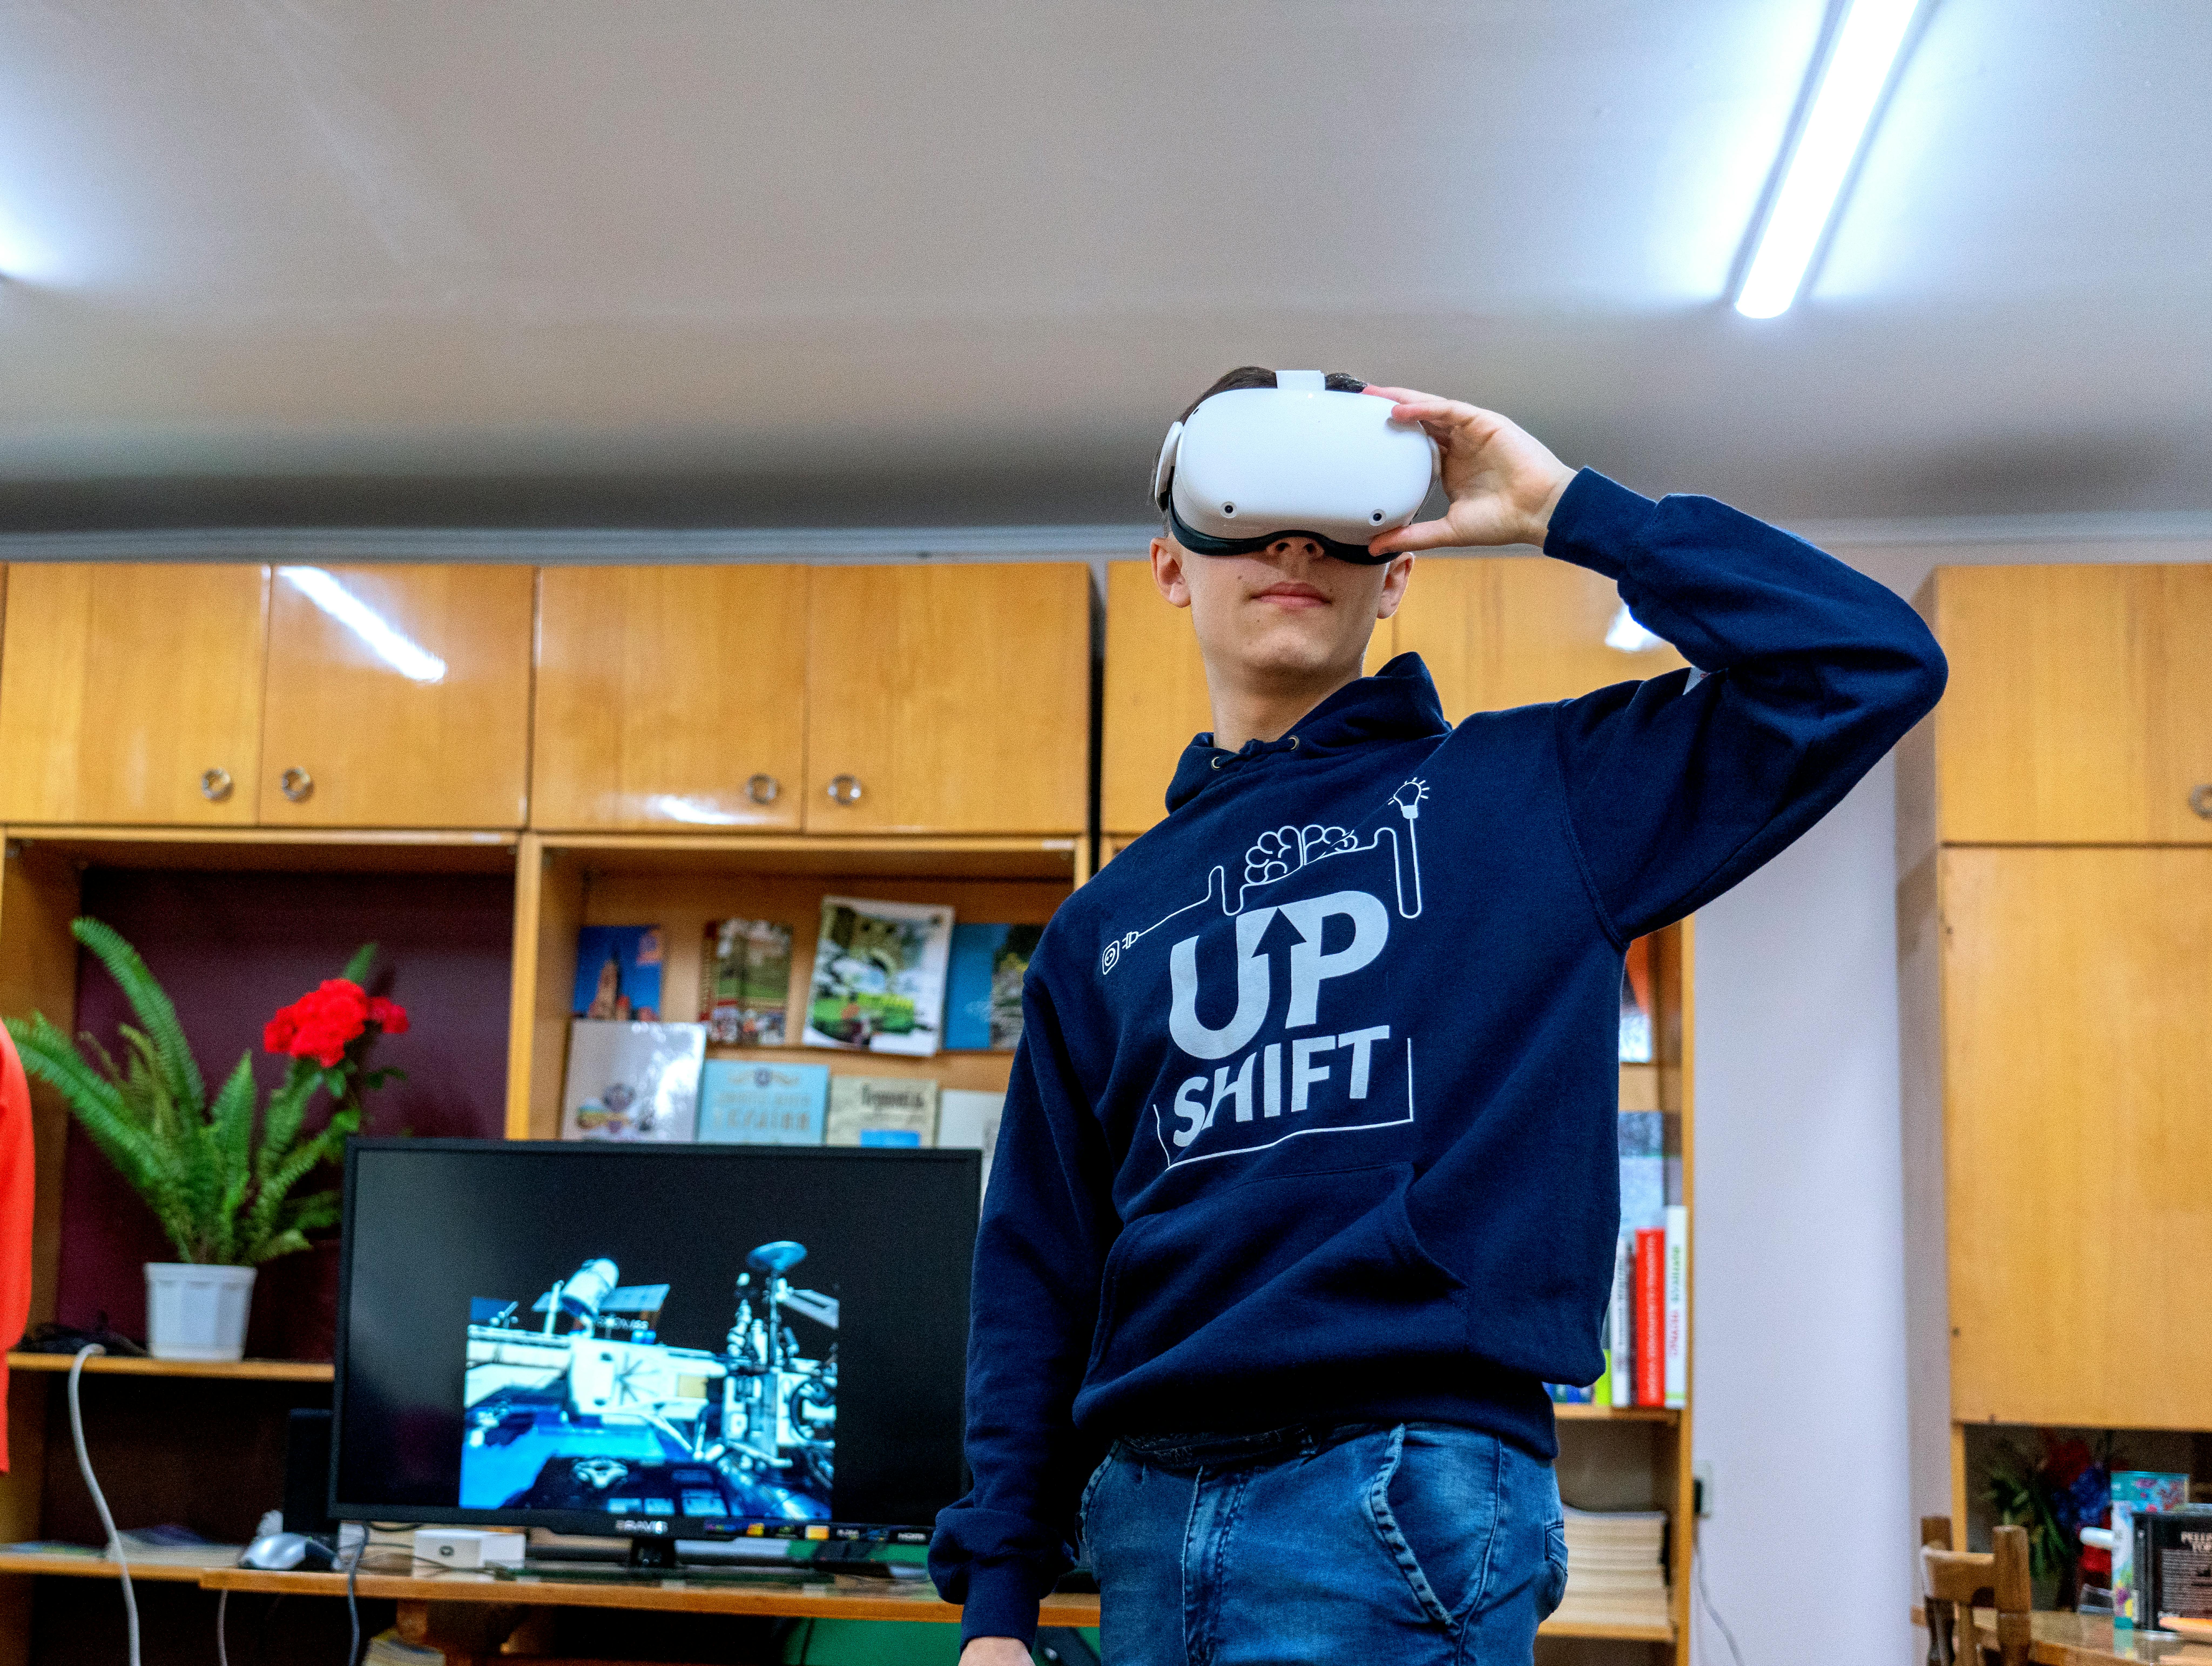 Ucraina: Vitalii, uno studente universitario di 18 anni di Ternopil, indossa occhiali VR. Fa parte di "Upgrade", un progetto giovanile UPSHIFT che organizza incontri per ragazzi sfollati nella città di Ternopil.